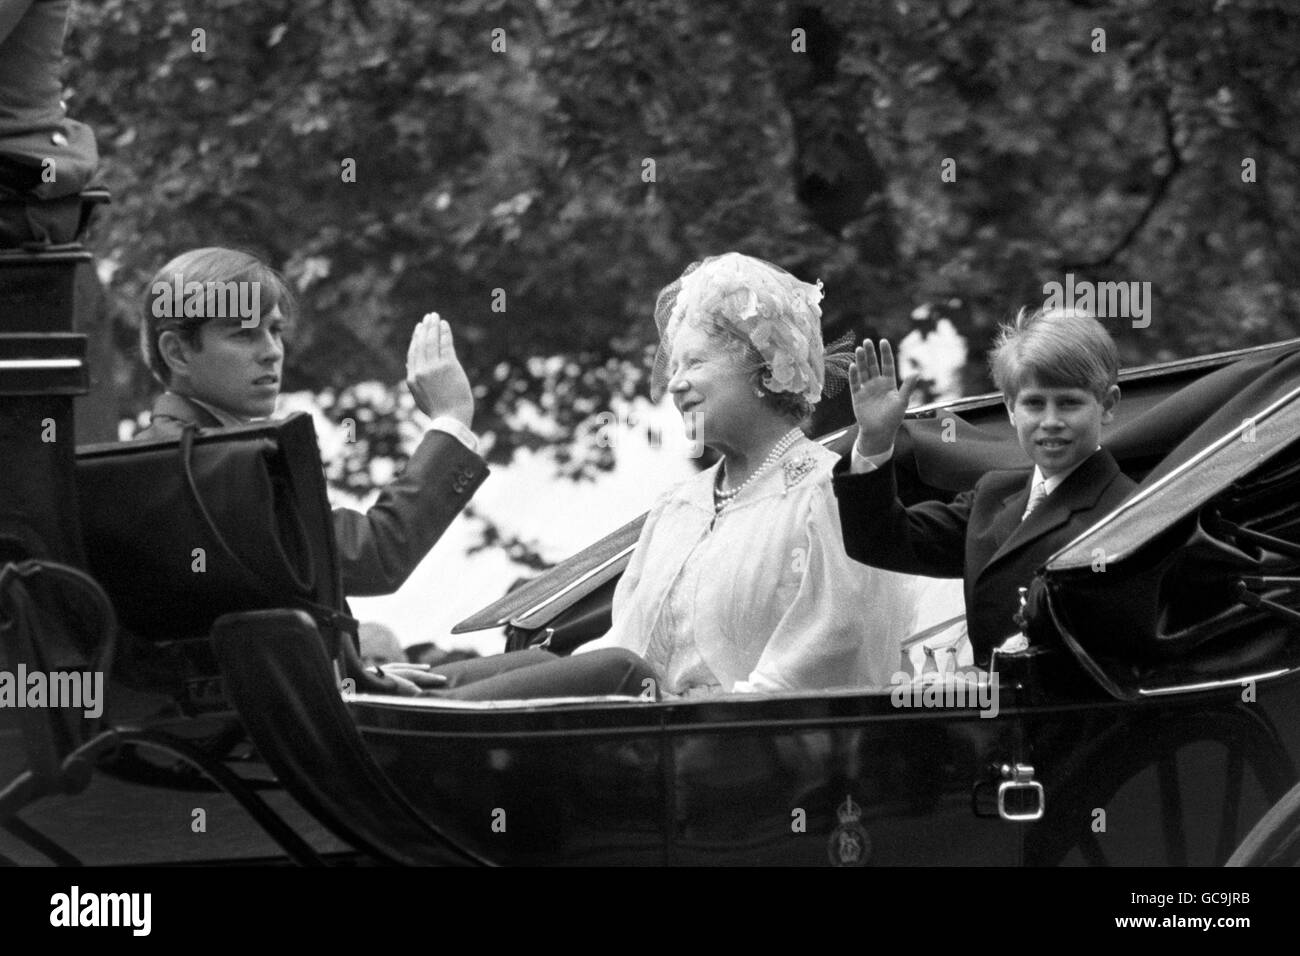 Le prince Andrew fait la même vague que son frère cadet, le prince Edward, lorsqu'il passe à la cérémonie de la couleur dans la parade des gardes à cheval, tandis que leur grand-mère, la reine Elizabeth, la reine mère, regarde dessus. Banque D'Images